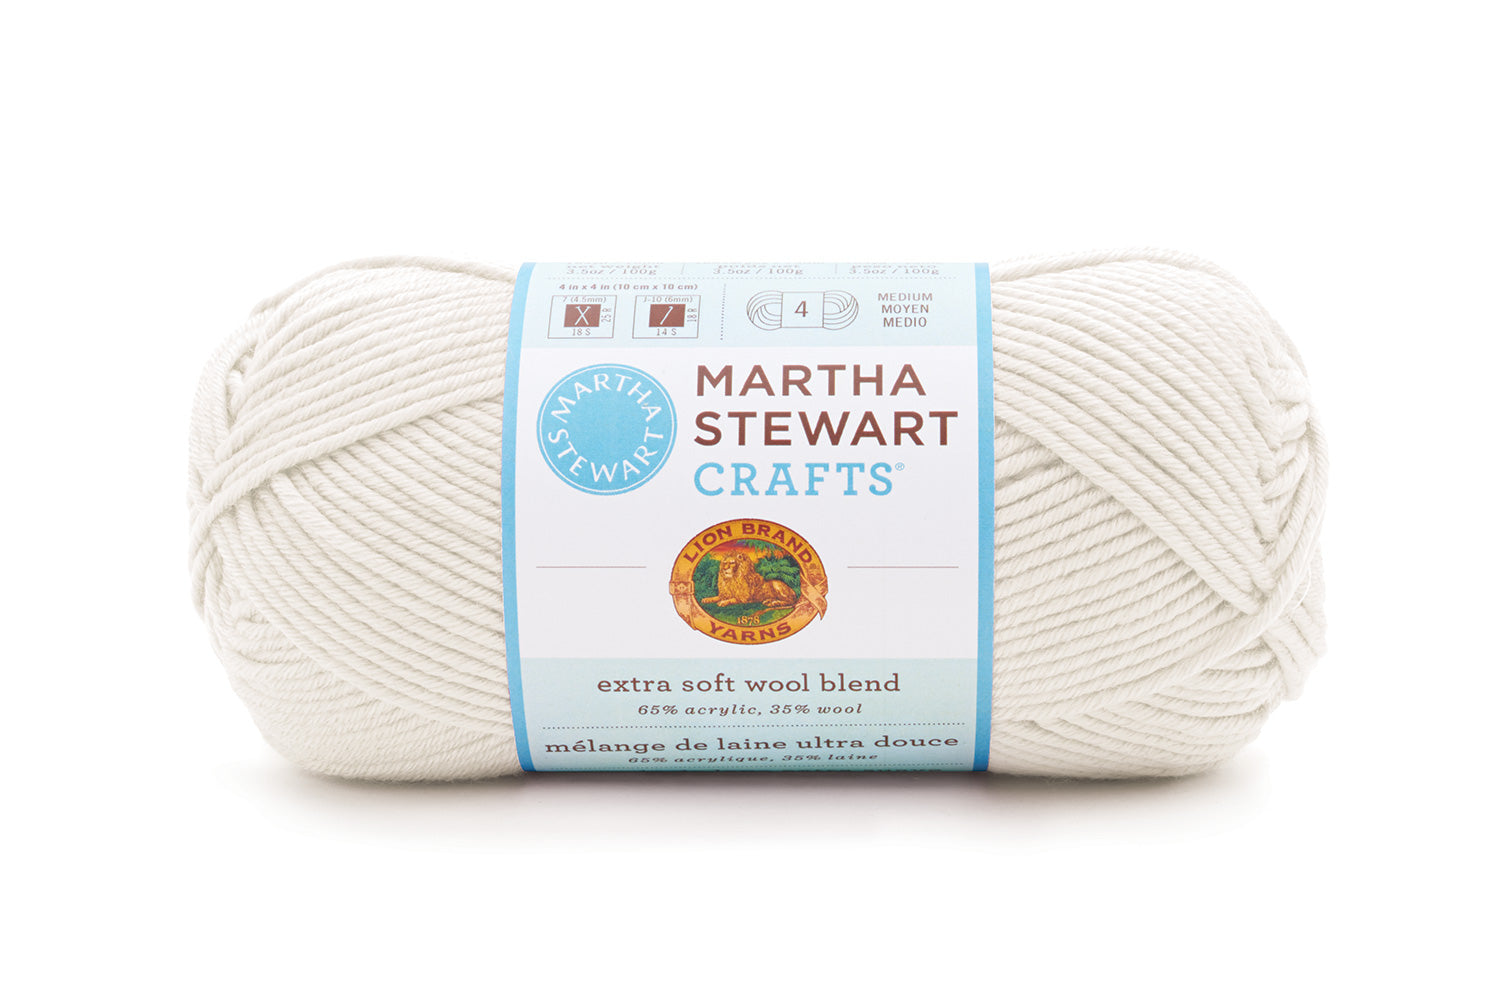 martha stewart crafts logo